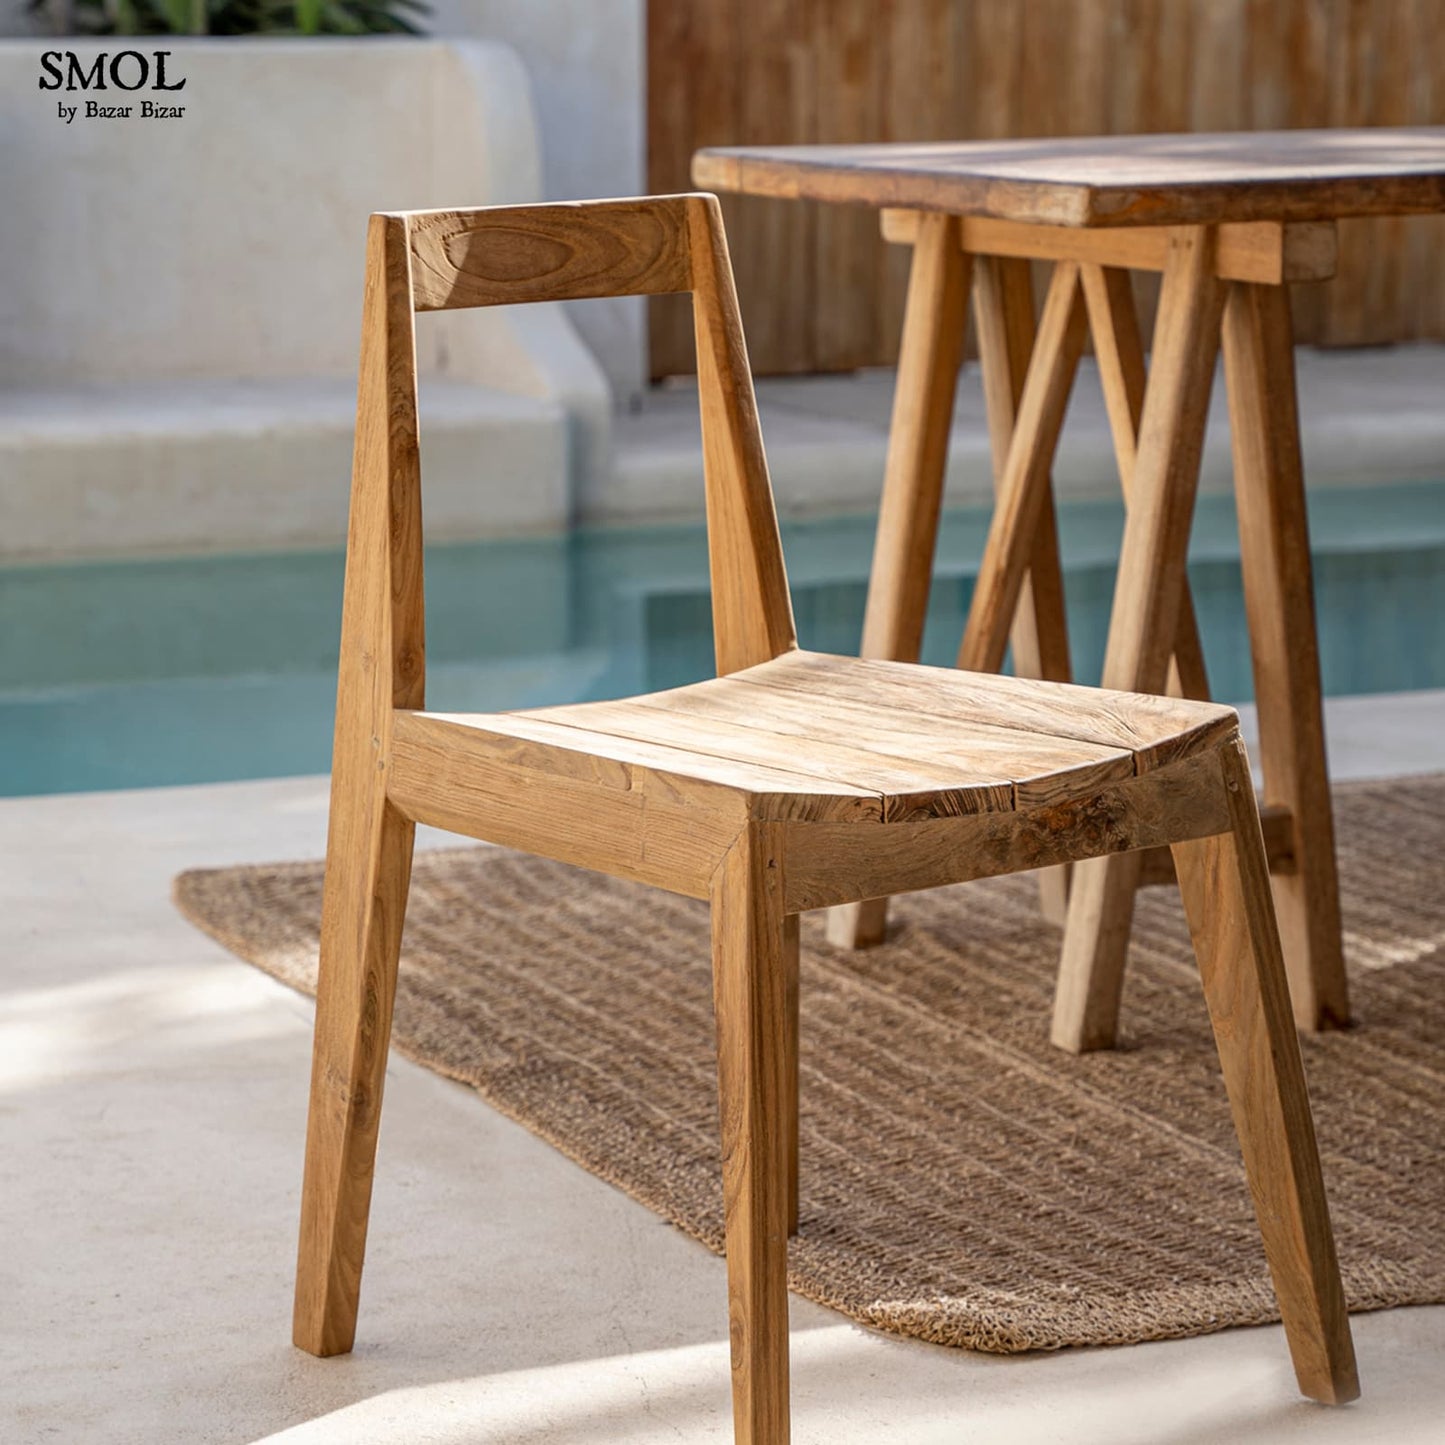 smol.hu- PAXI, natúr, fa szék, 79 cm asztal alól kihúzva